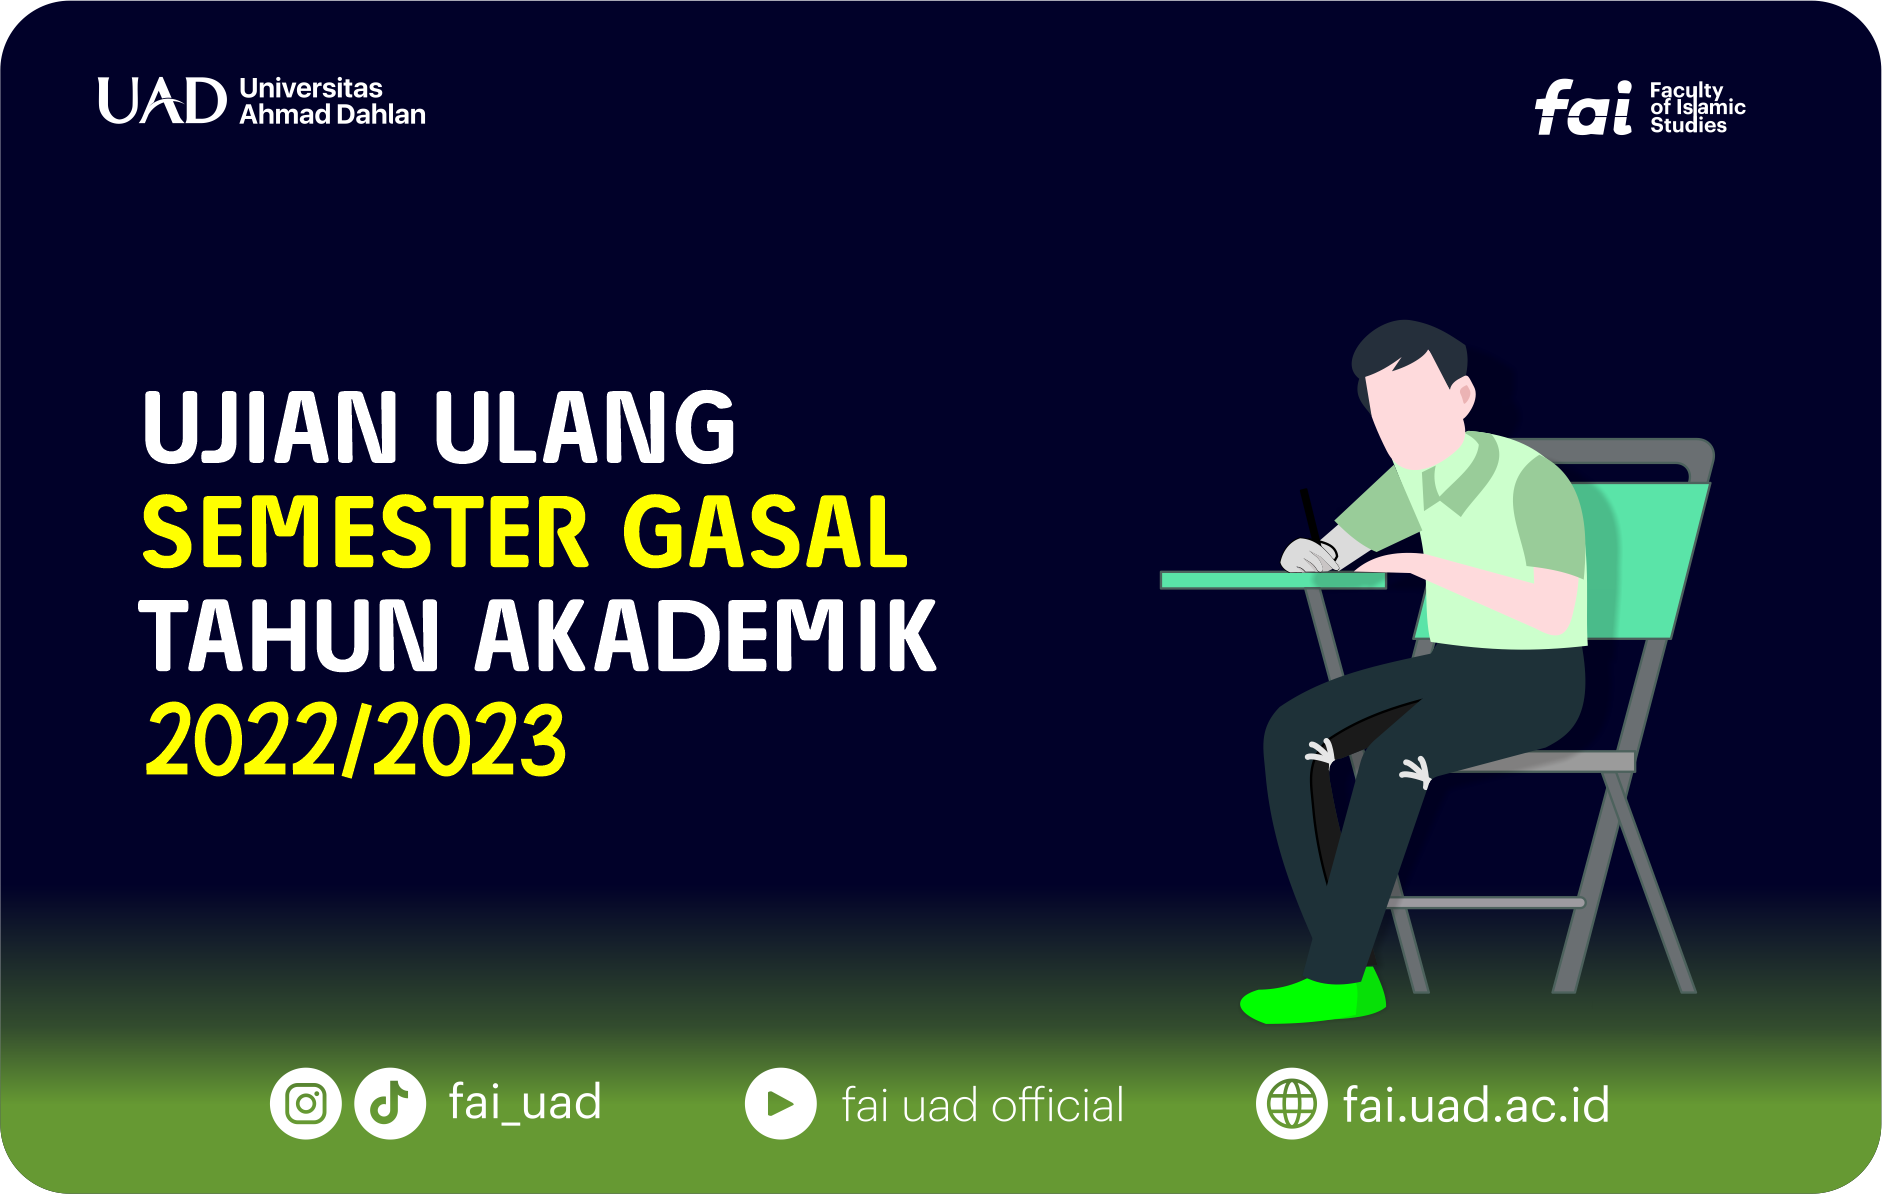 UJIAN ULANG SEMESTER GASAL TAHUN AKADEMIK 2022/2023 DI LINGKUNGAN FAI UNIVERSITAS AHMAD DAHLAN